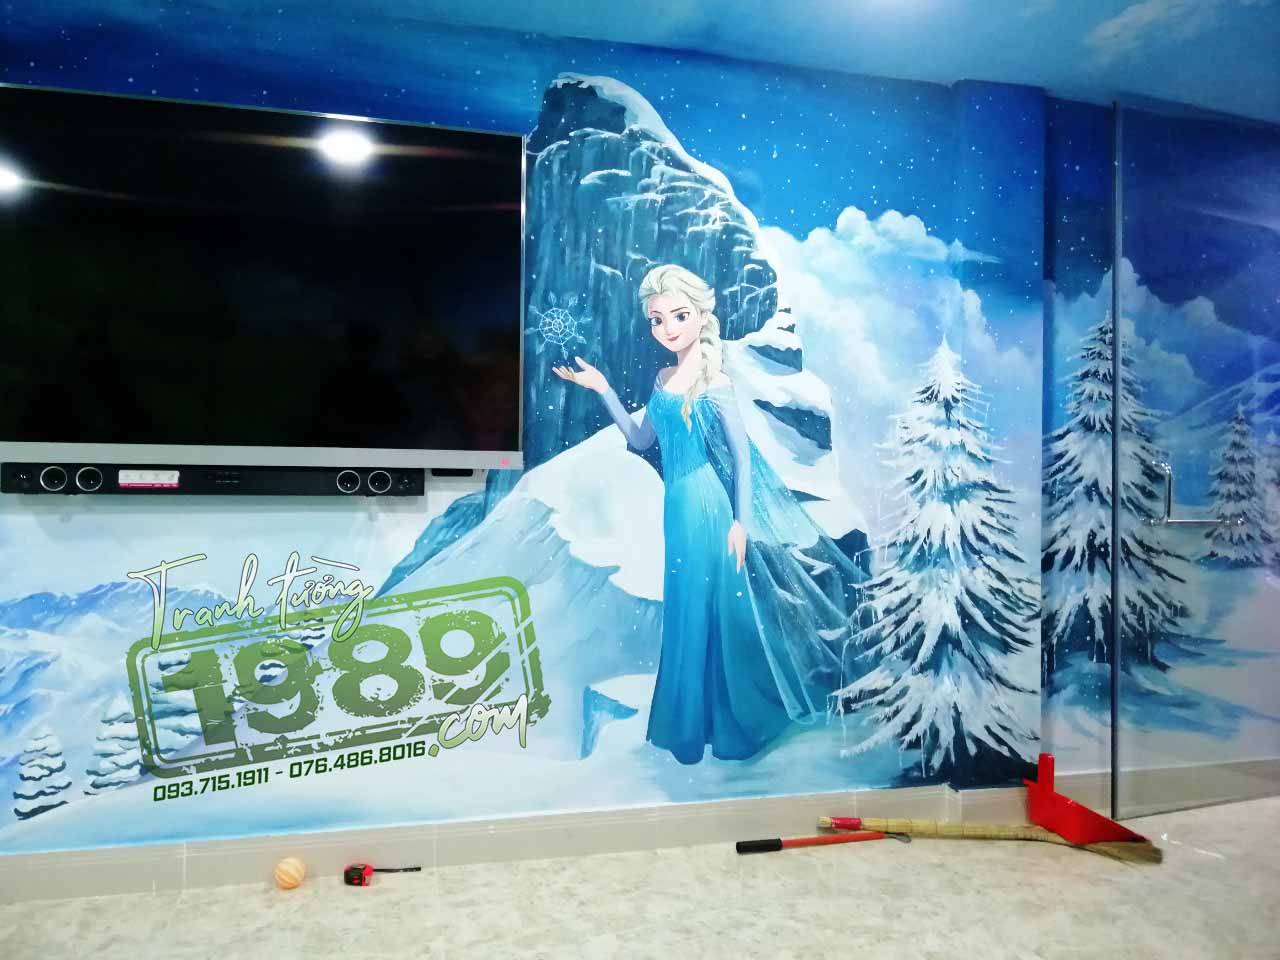 Vẽ Nữ Hoàng Elsa (Frozen) cho phòng bé - Tranh tường 1989